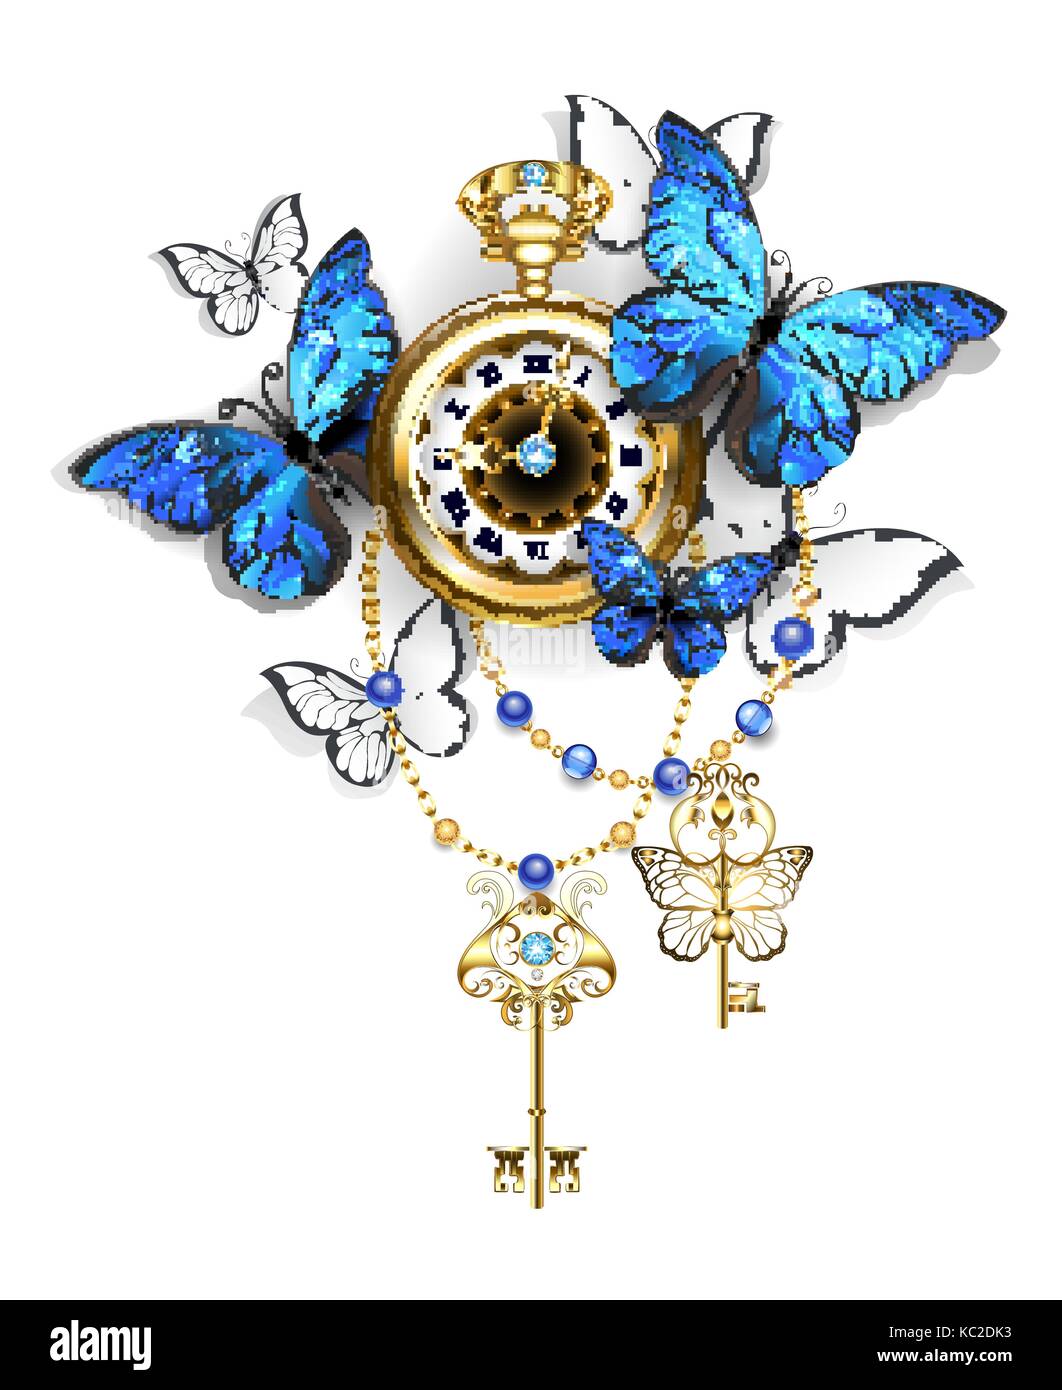 Antique Gold watch mit blauen und weißen Schmetterlingen morpho und goldenen Schlüsseln auf einem weißen Hintergrund. Design mit blauer Schmetterling Morpho. Stock Vektor